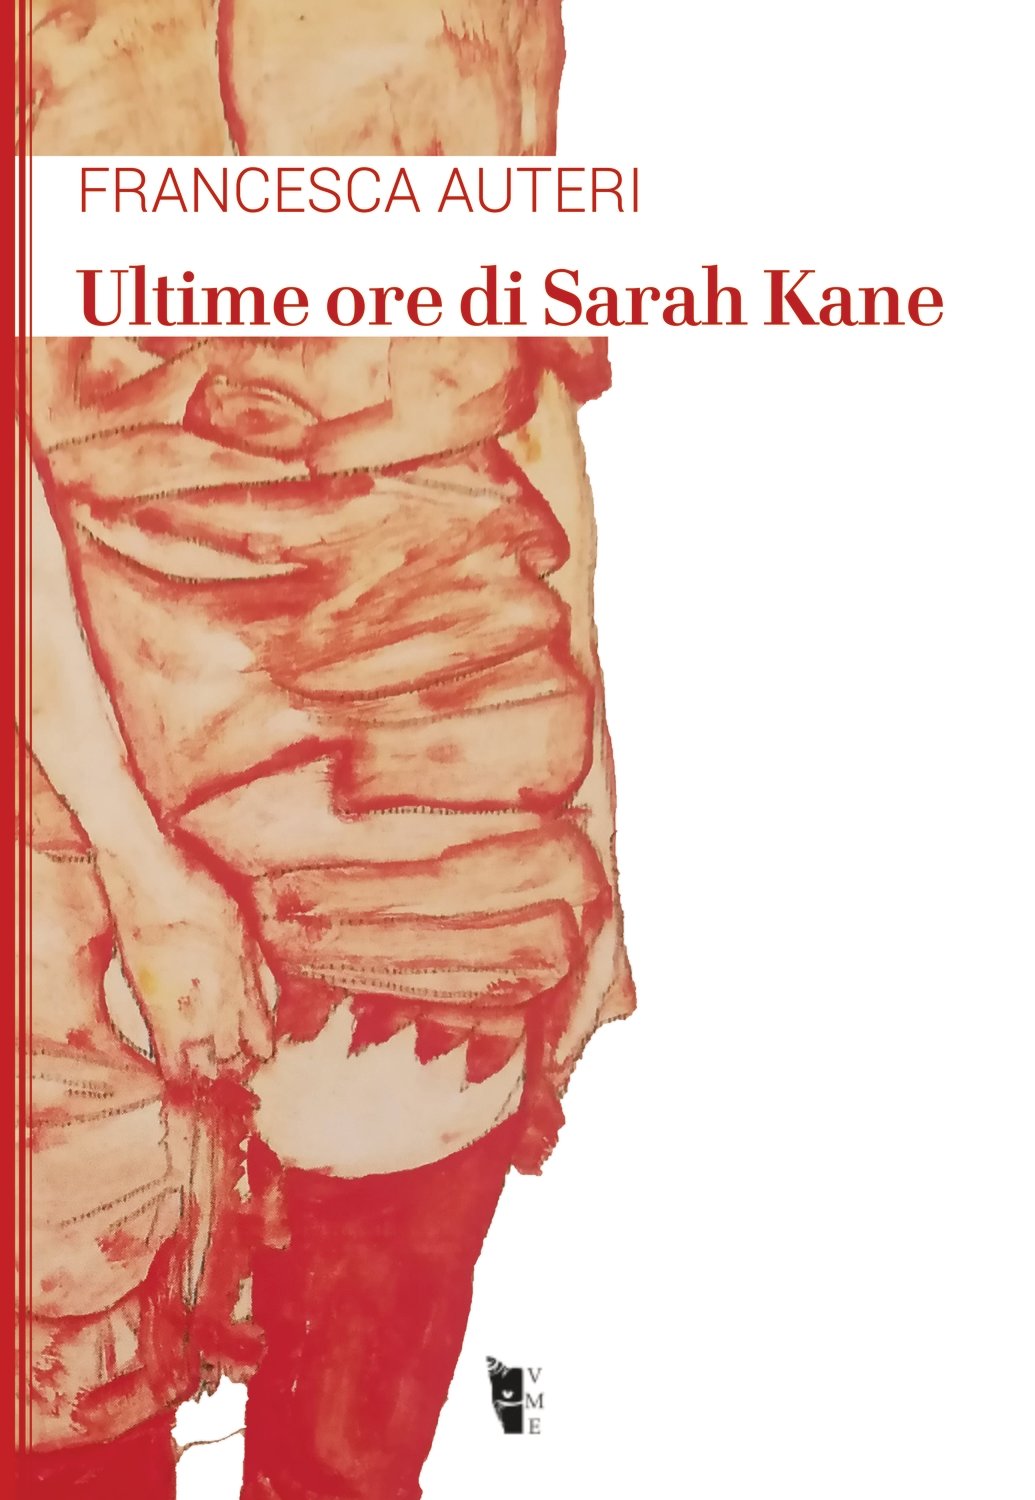 Francesca Auteri - Ultime ore di Sarah Kane